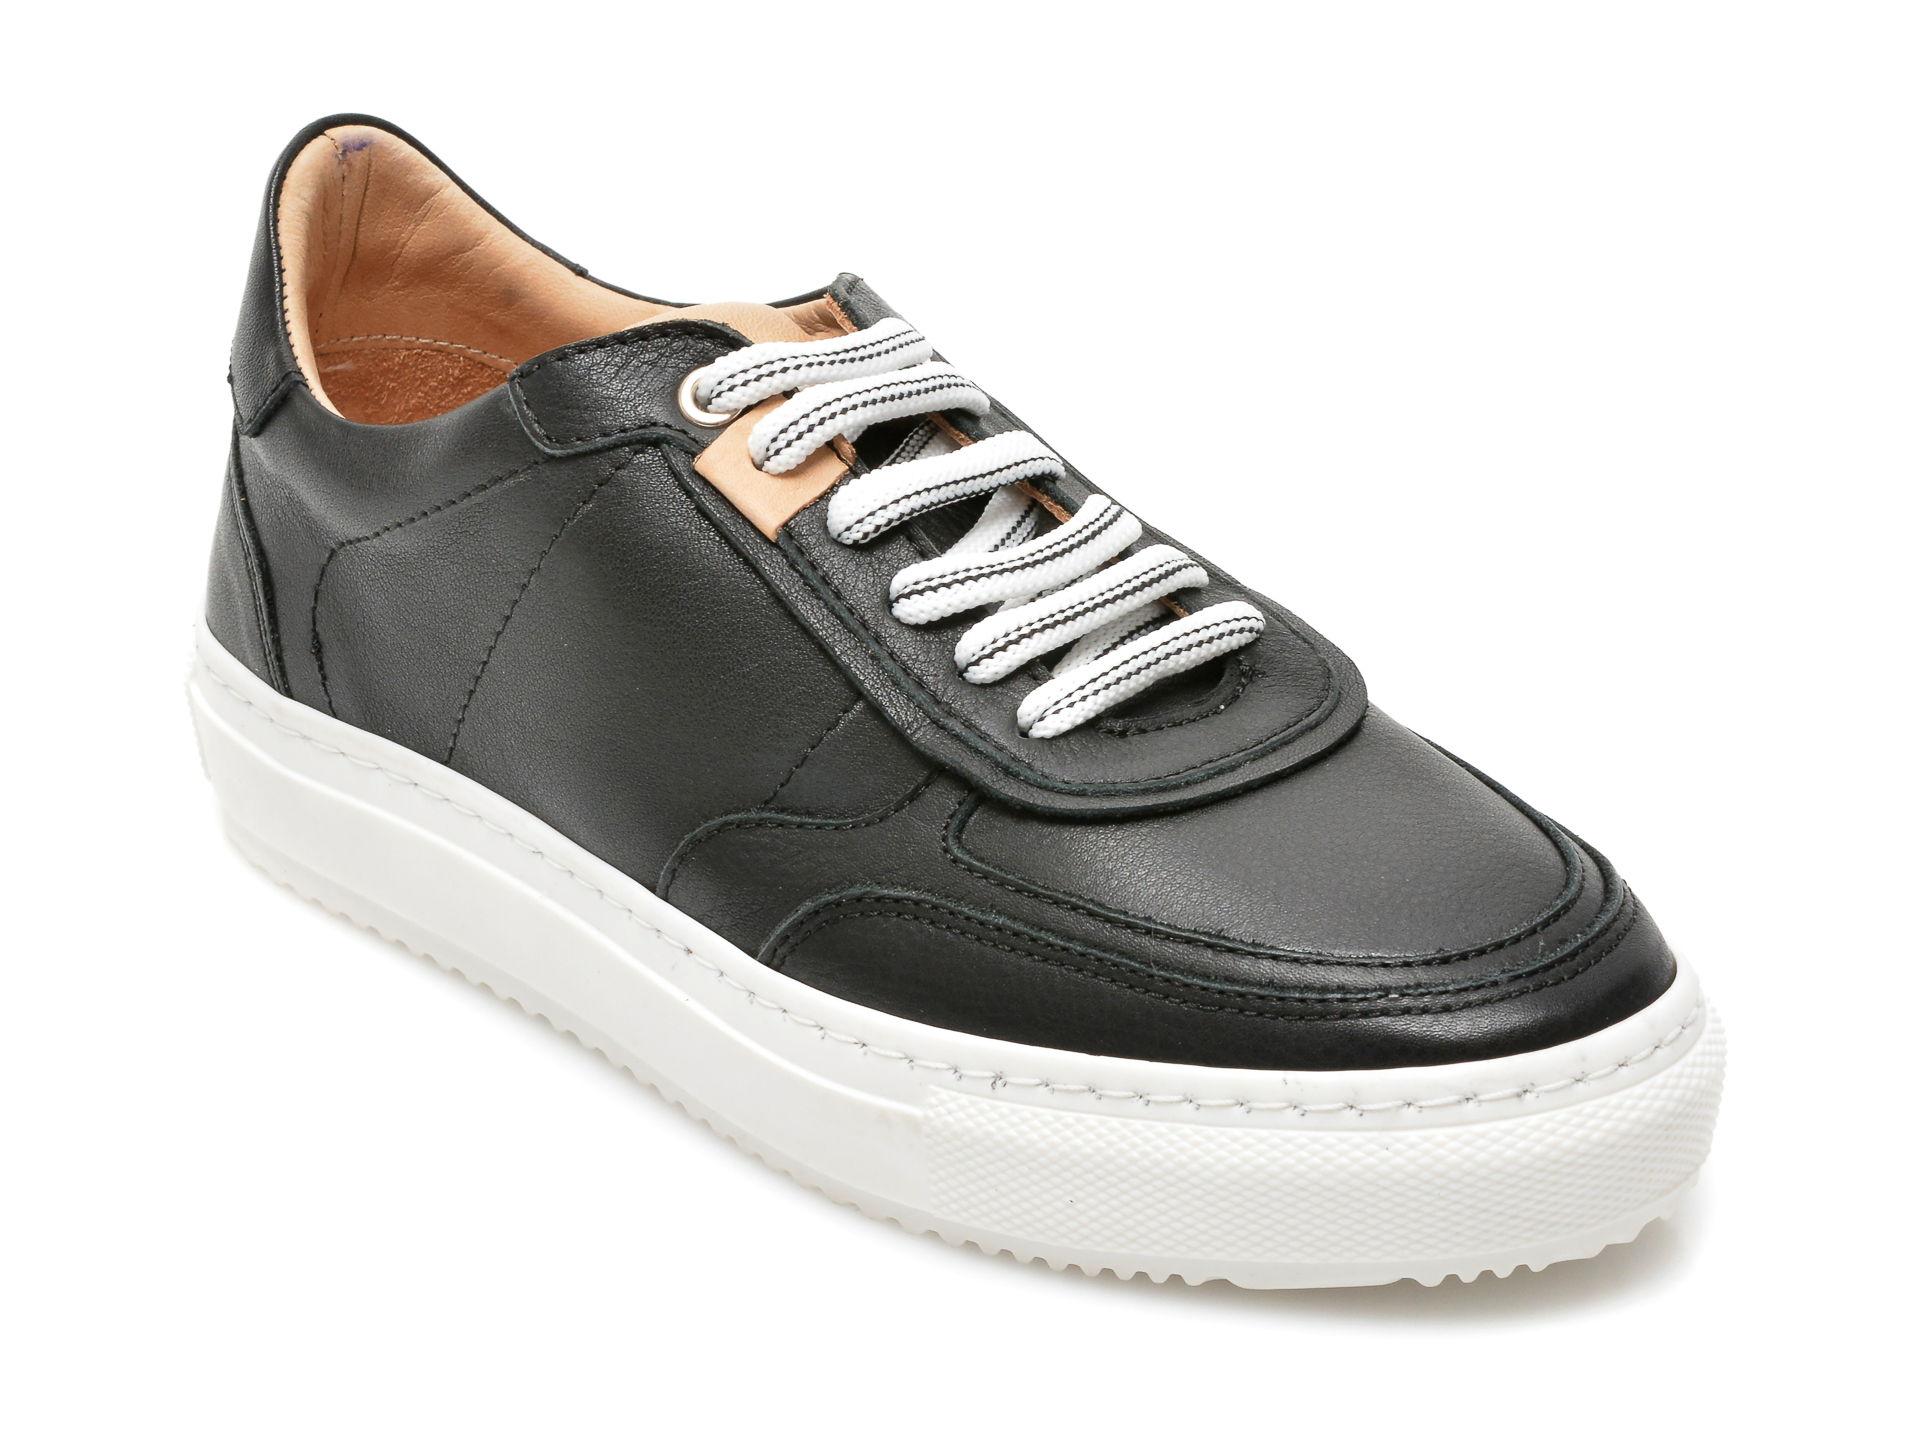 Pantofi FLAVIA PASSINI negri, 62379, din piele naturala Flavia Passini imagine noua